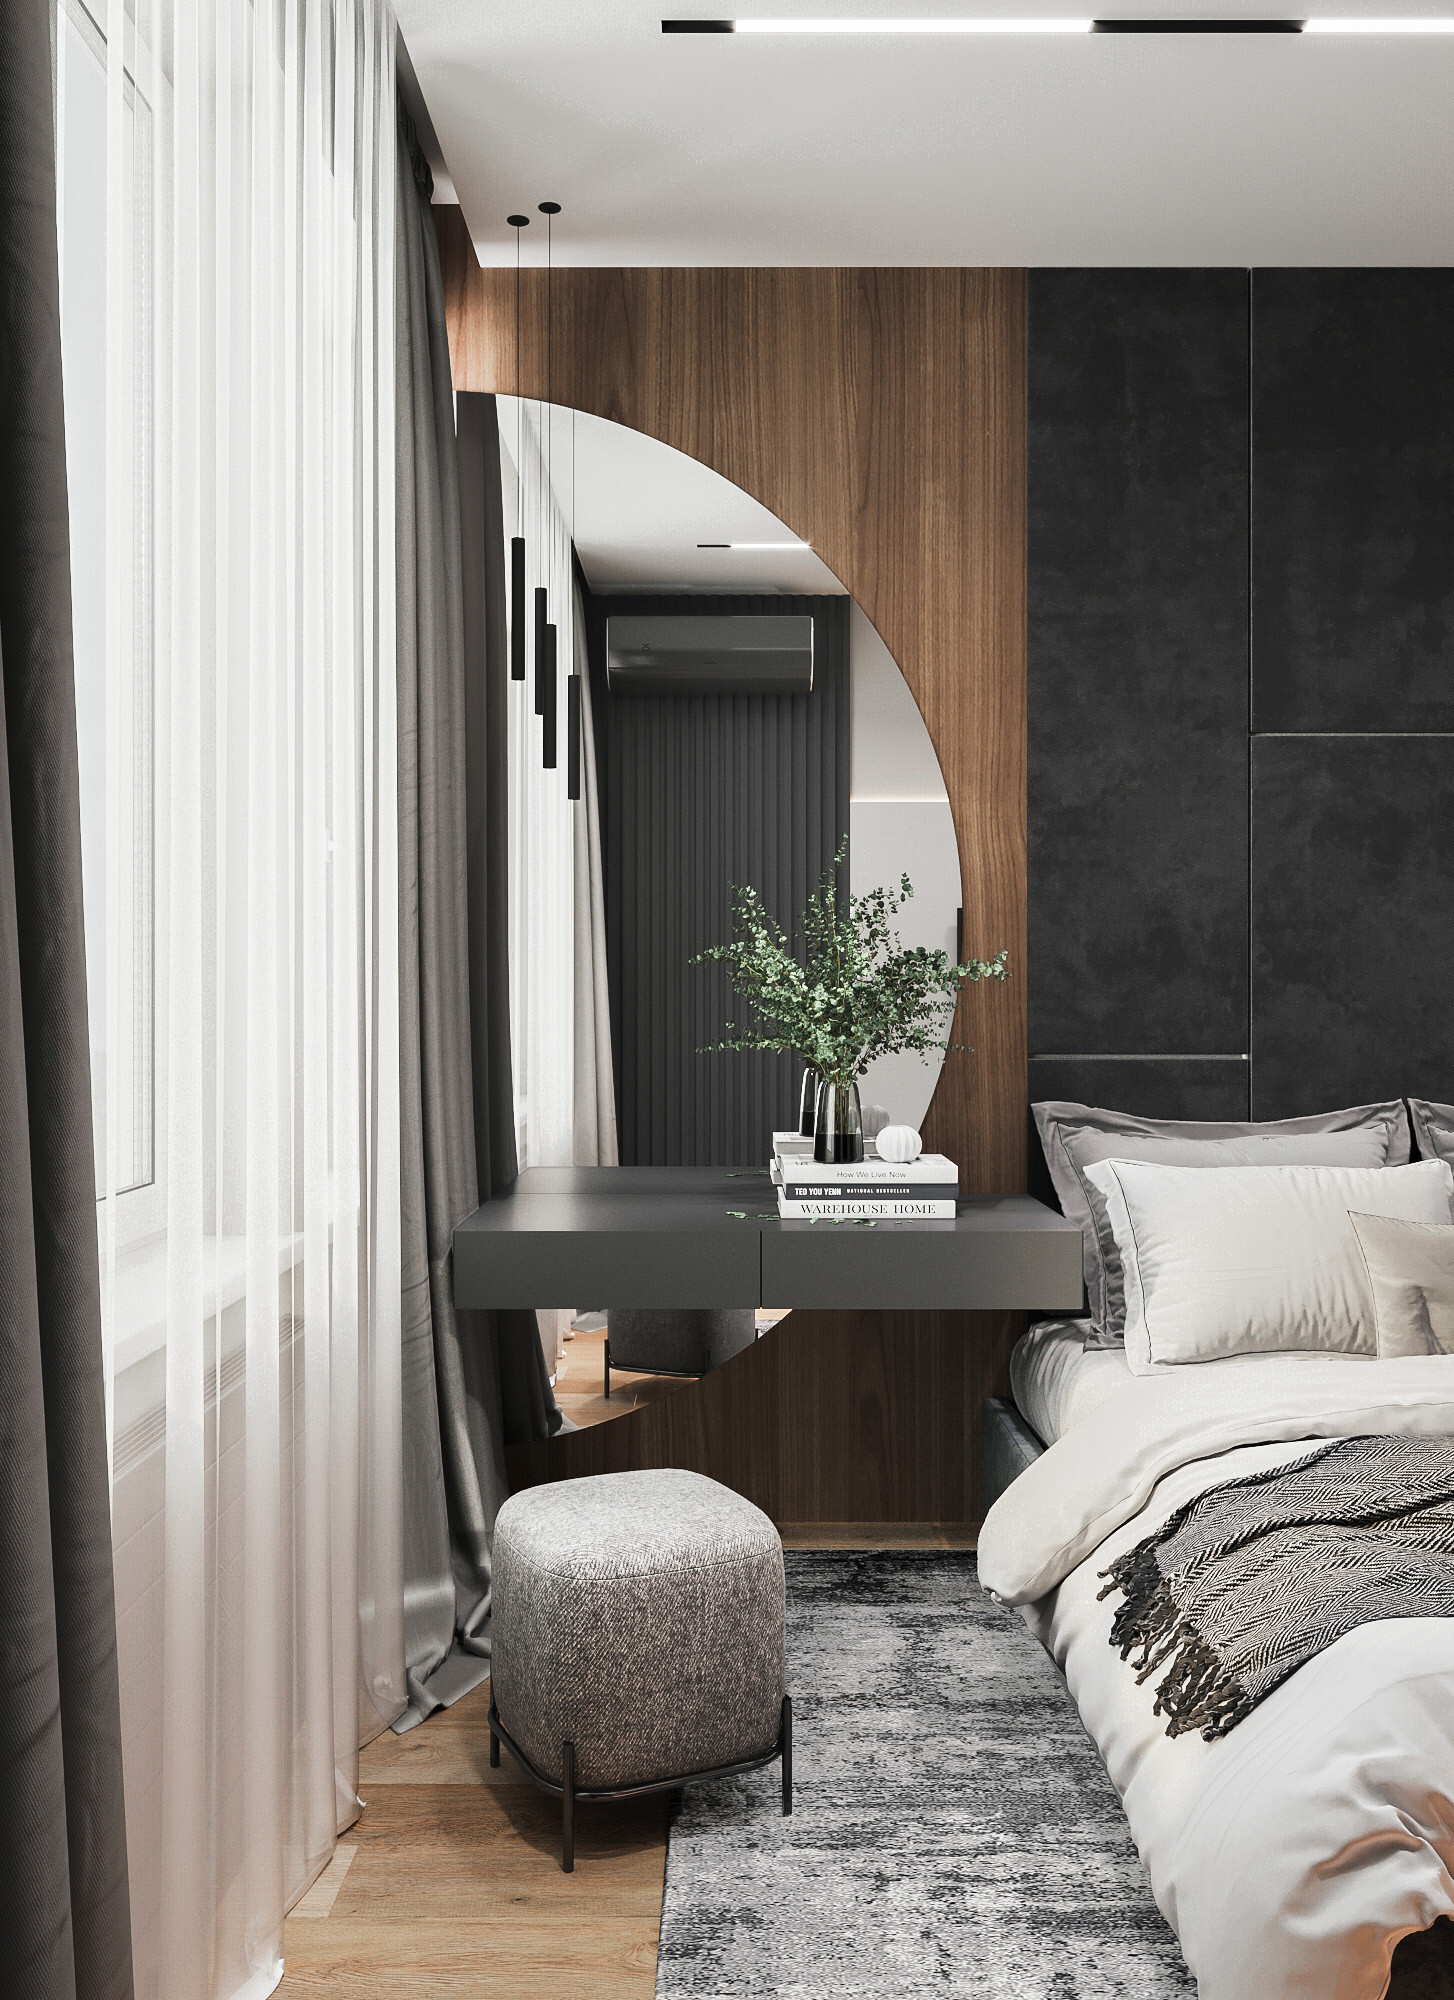 Интерьер спальни с зеркалом в нише и шкафом у кровати в современном стиле, в стиле лофт, эко и контемпорарях